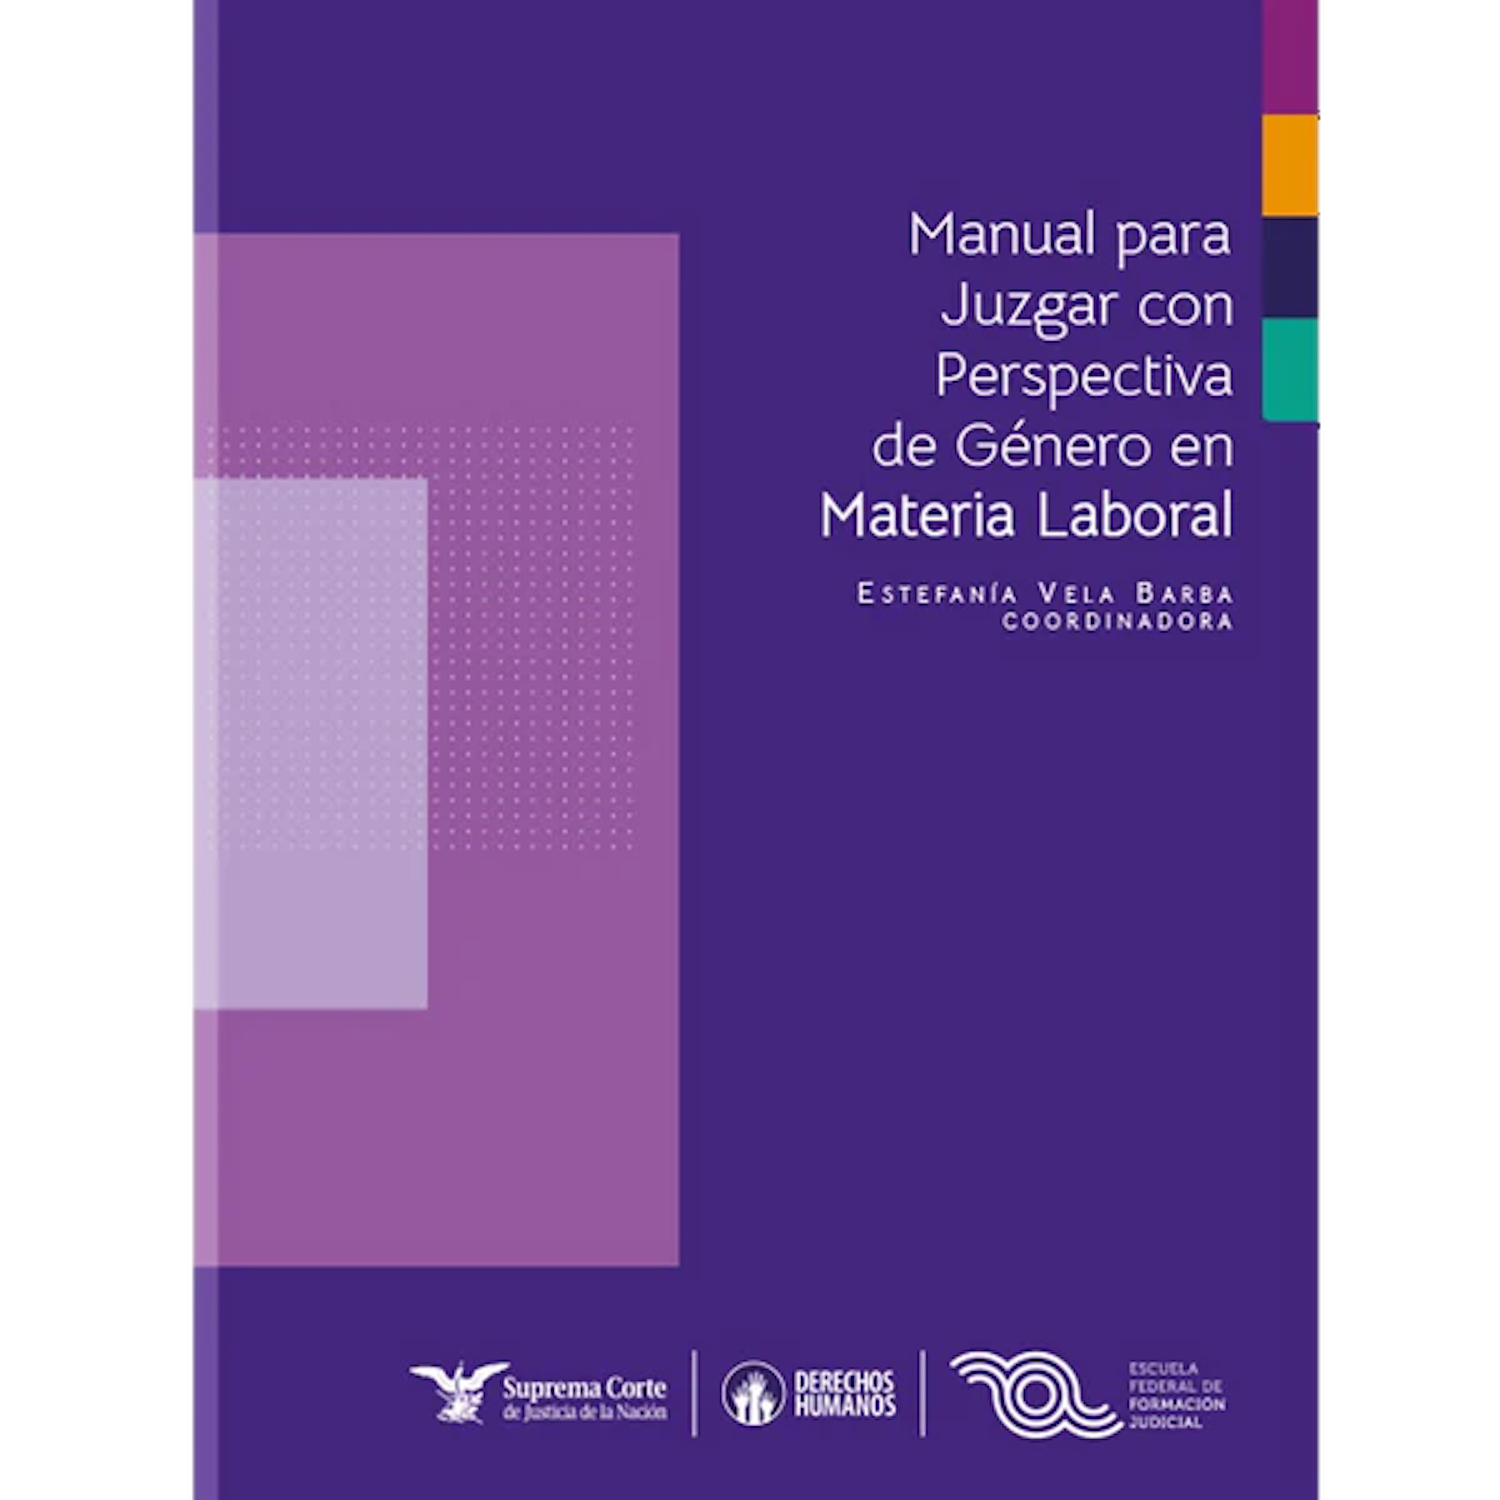 Manual para Juzgar con Perspectiva de Género en Materia Laboral